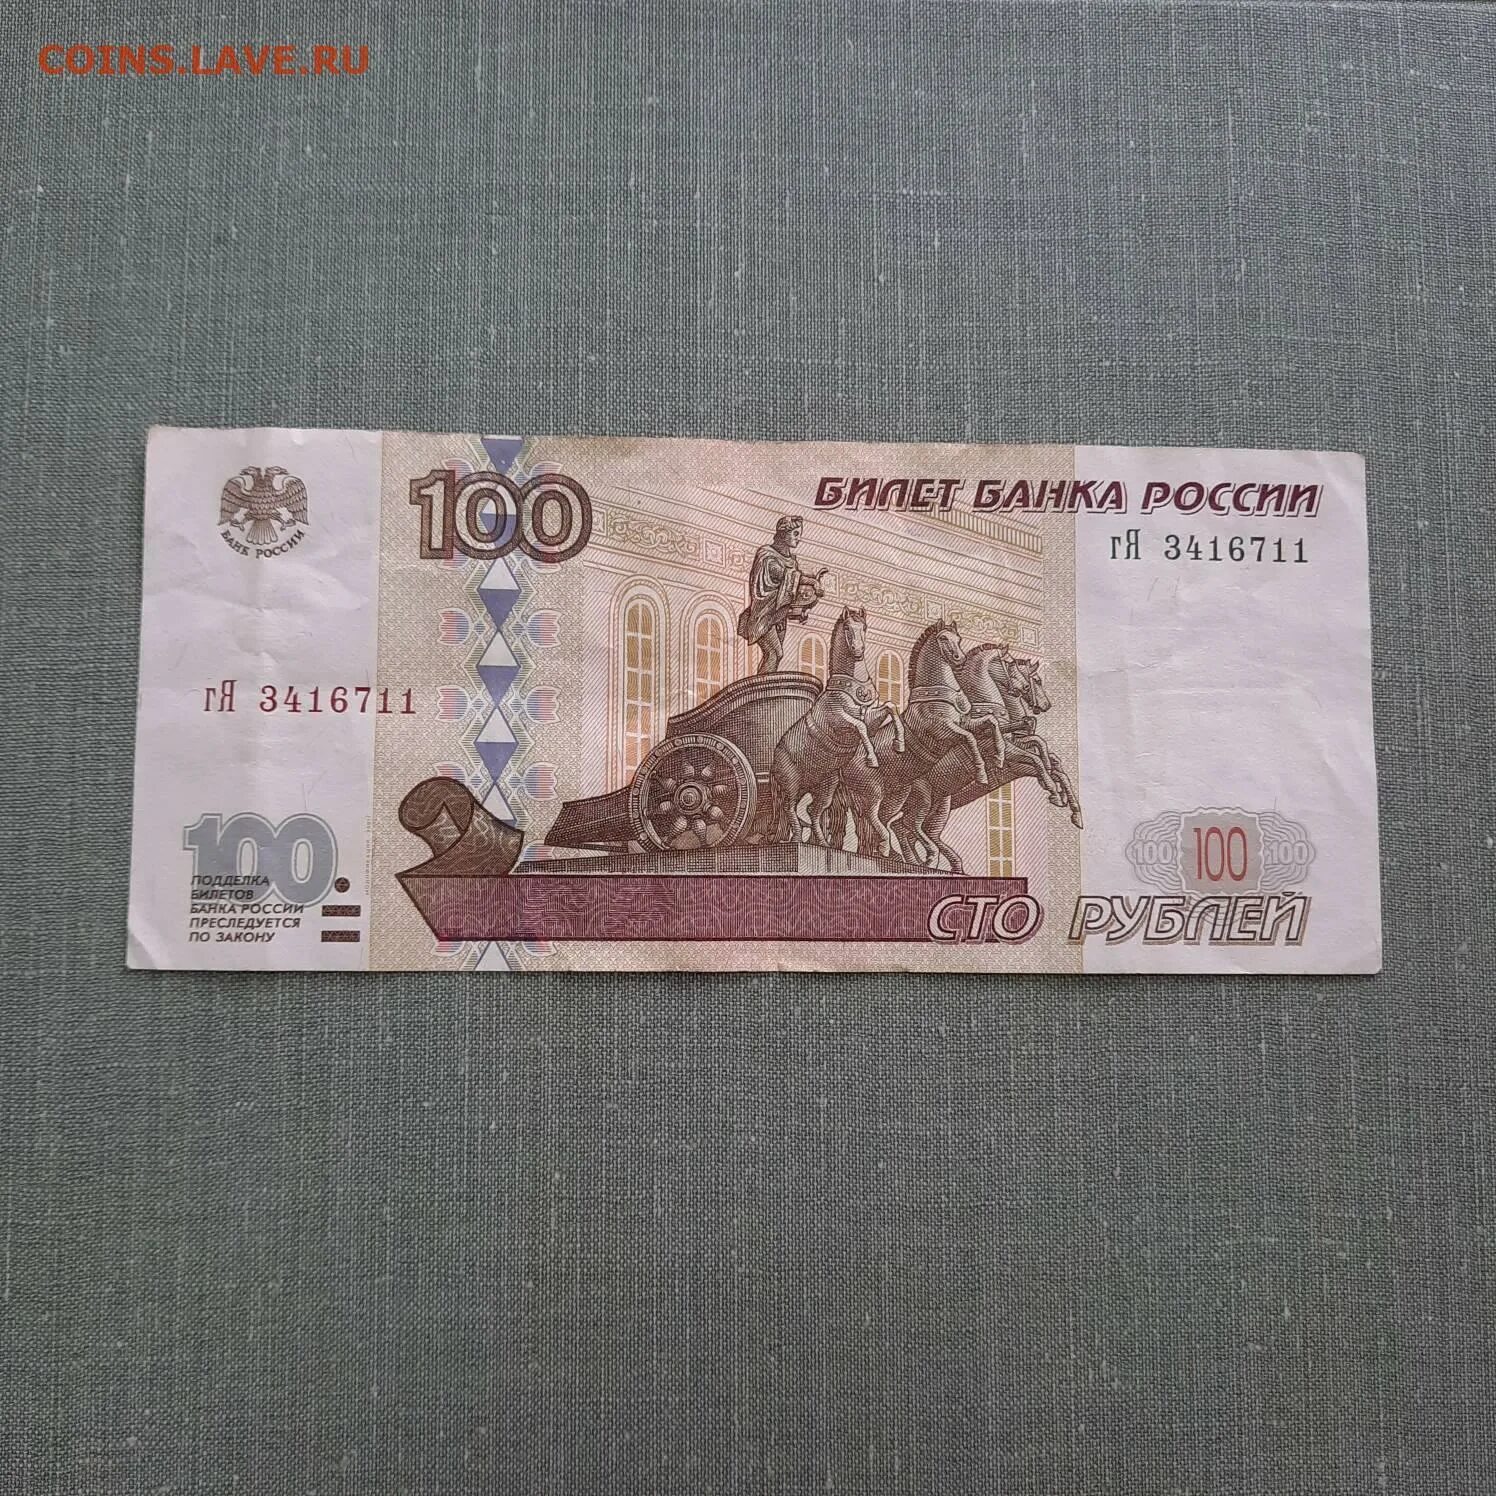 СТО рублей модификация 2001. 100 Рублей модификация 2001. 100 Рублей 1997. 10 Рублей модификация 2001.